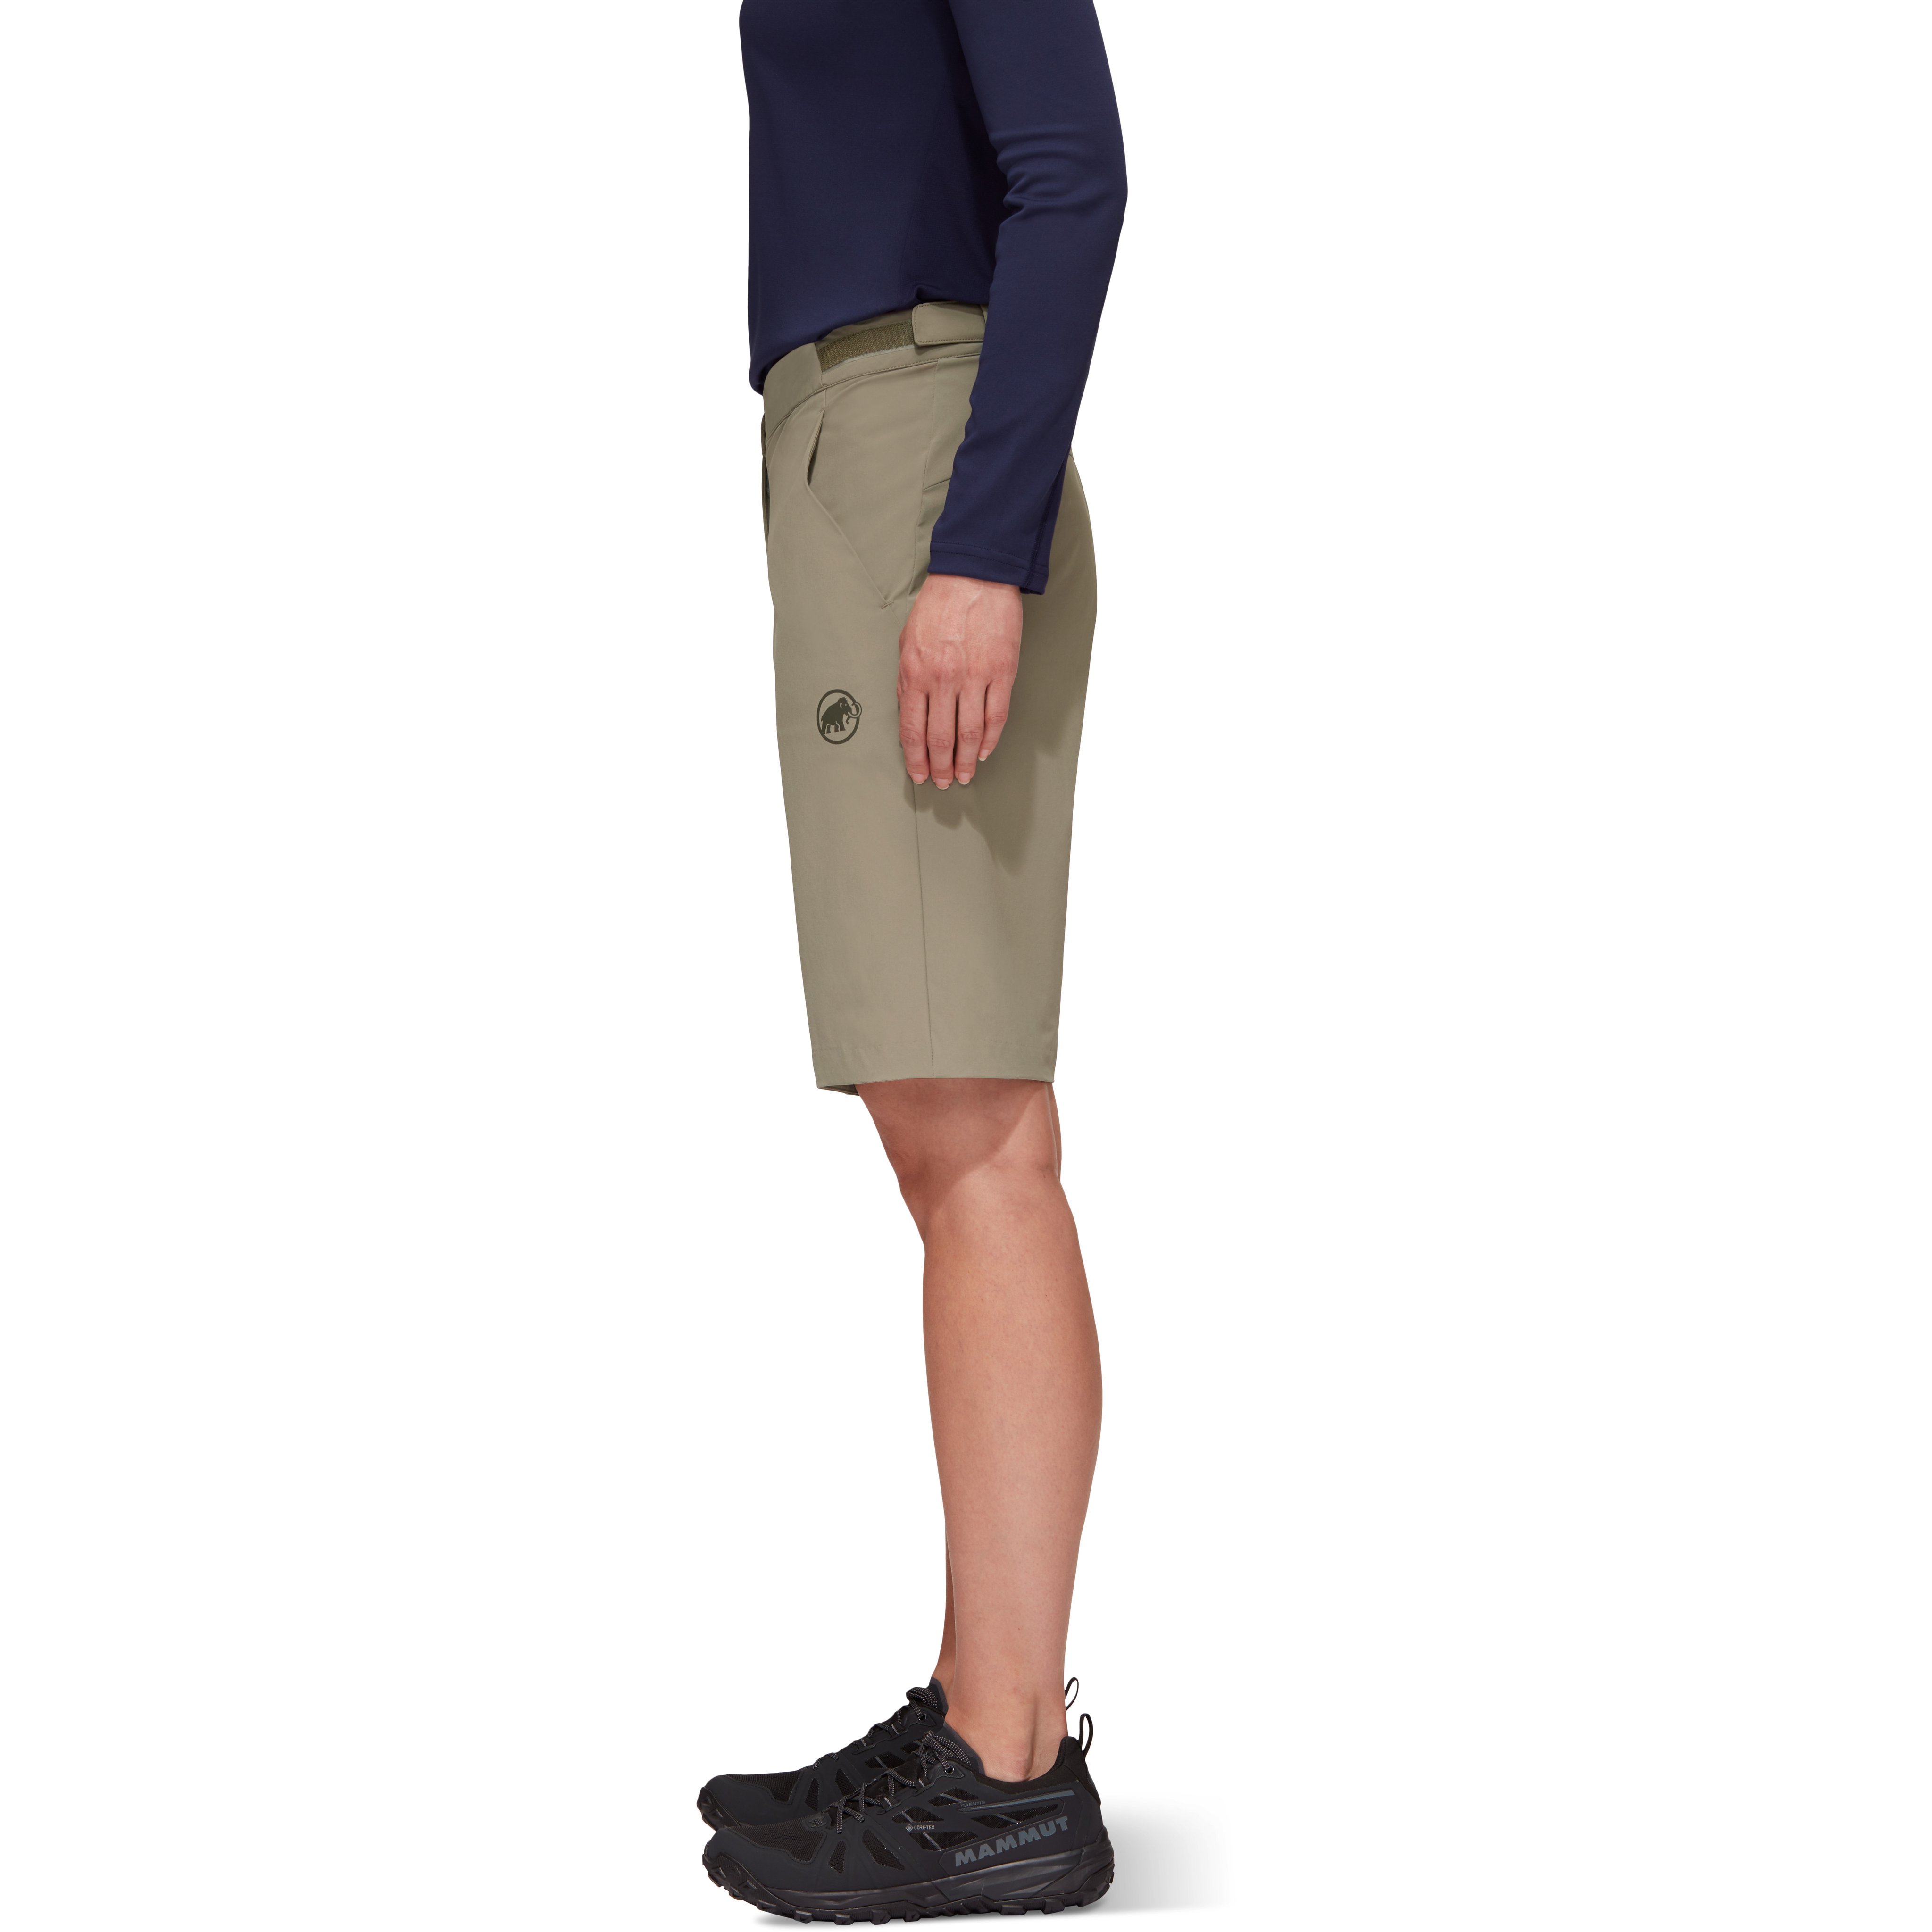 Ledge Shorts Women product image